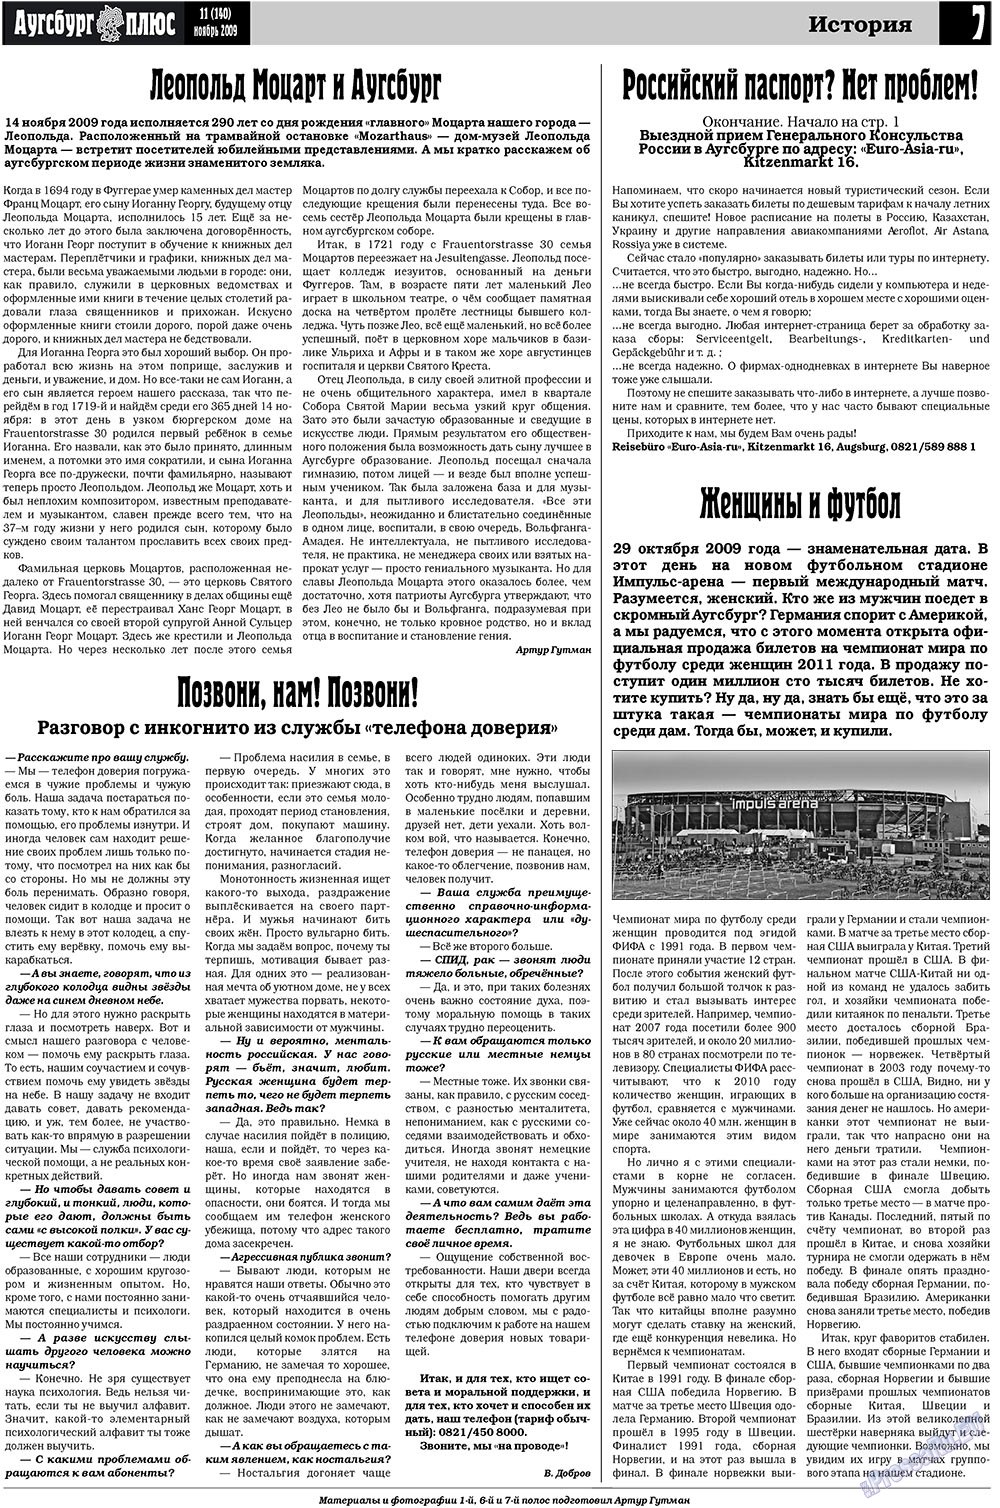 Германия плюс, газета. 2009 №11 стр.23